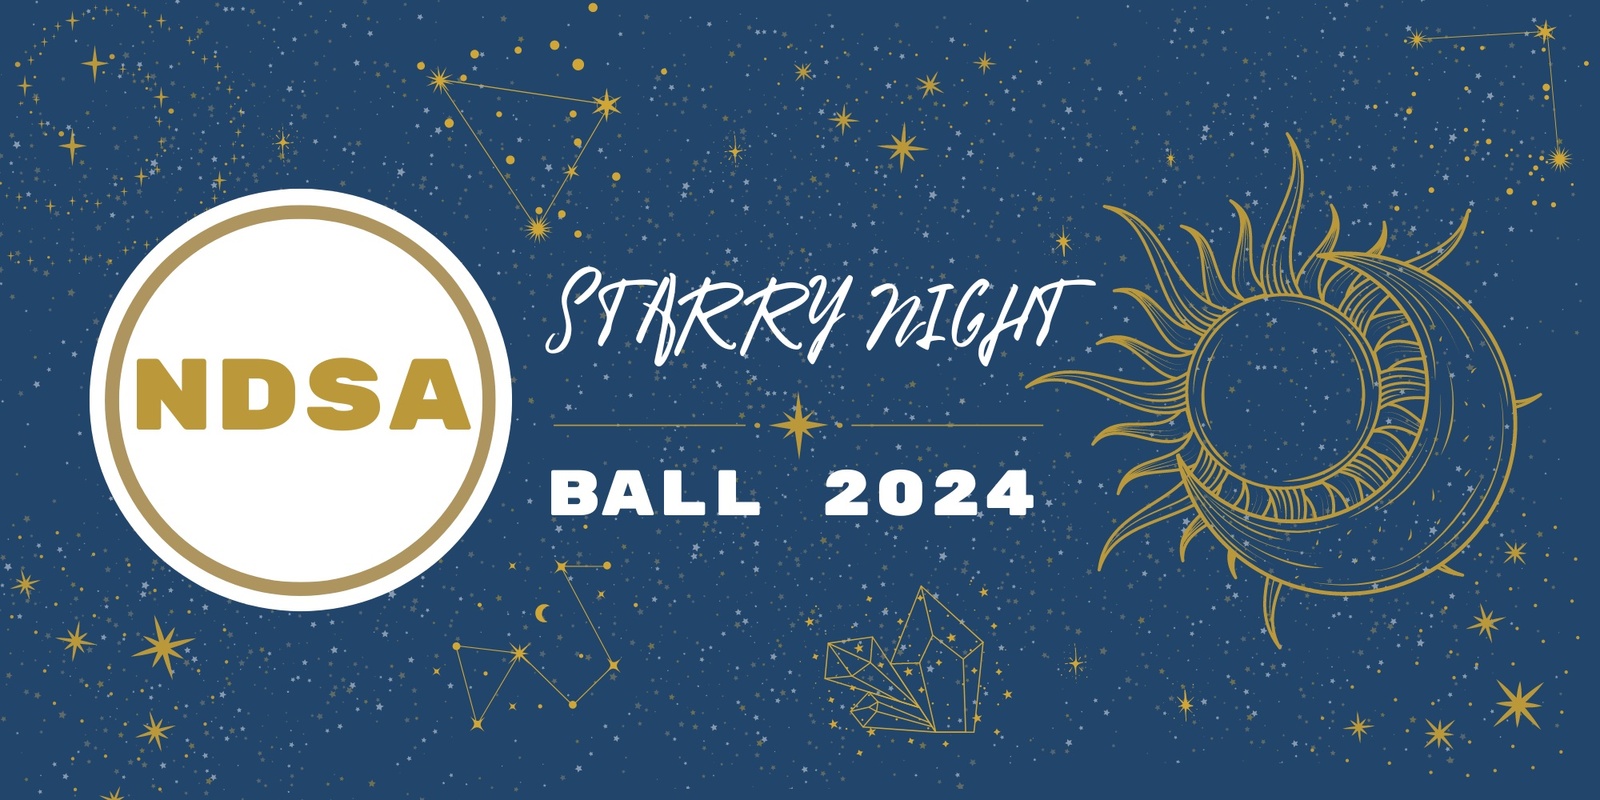 Banner image for 2024 NDSA Ball